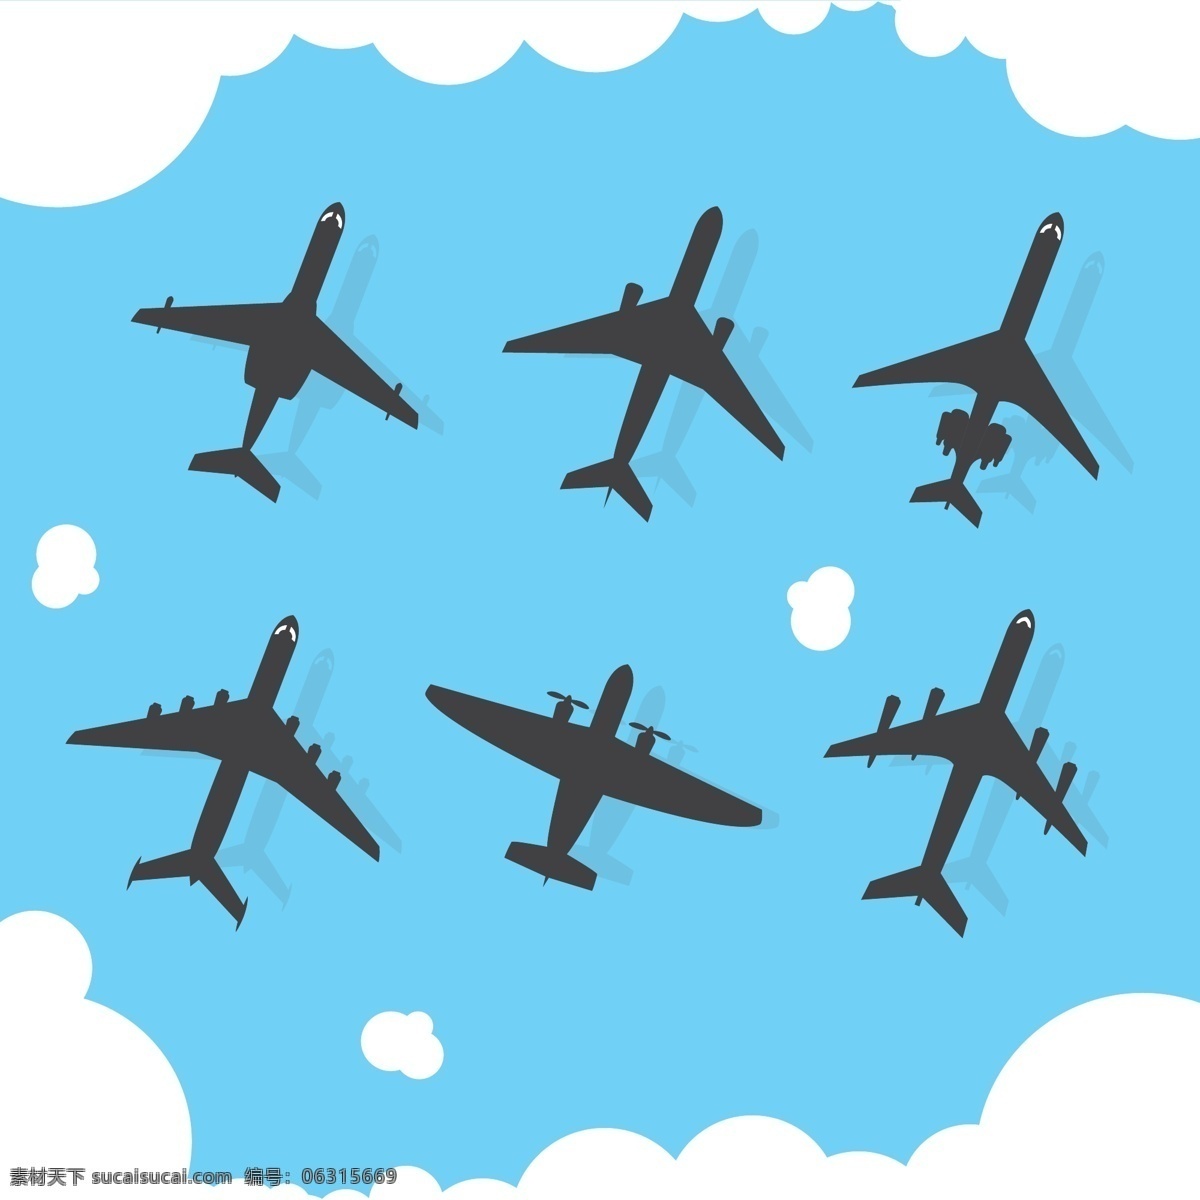 卡通 创意 飞机 插画 云朵 天空